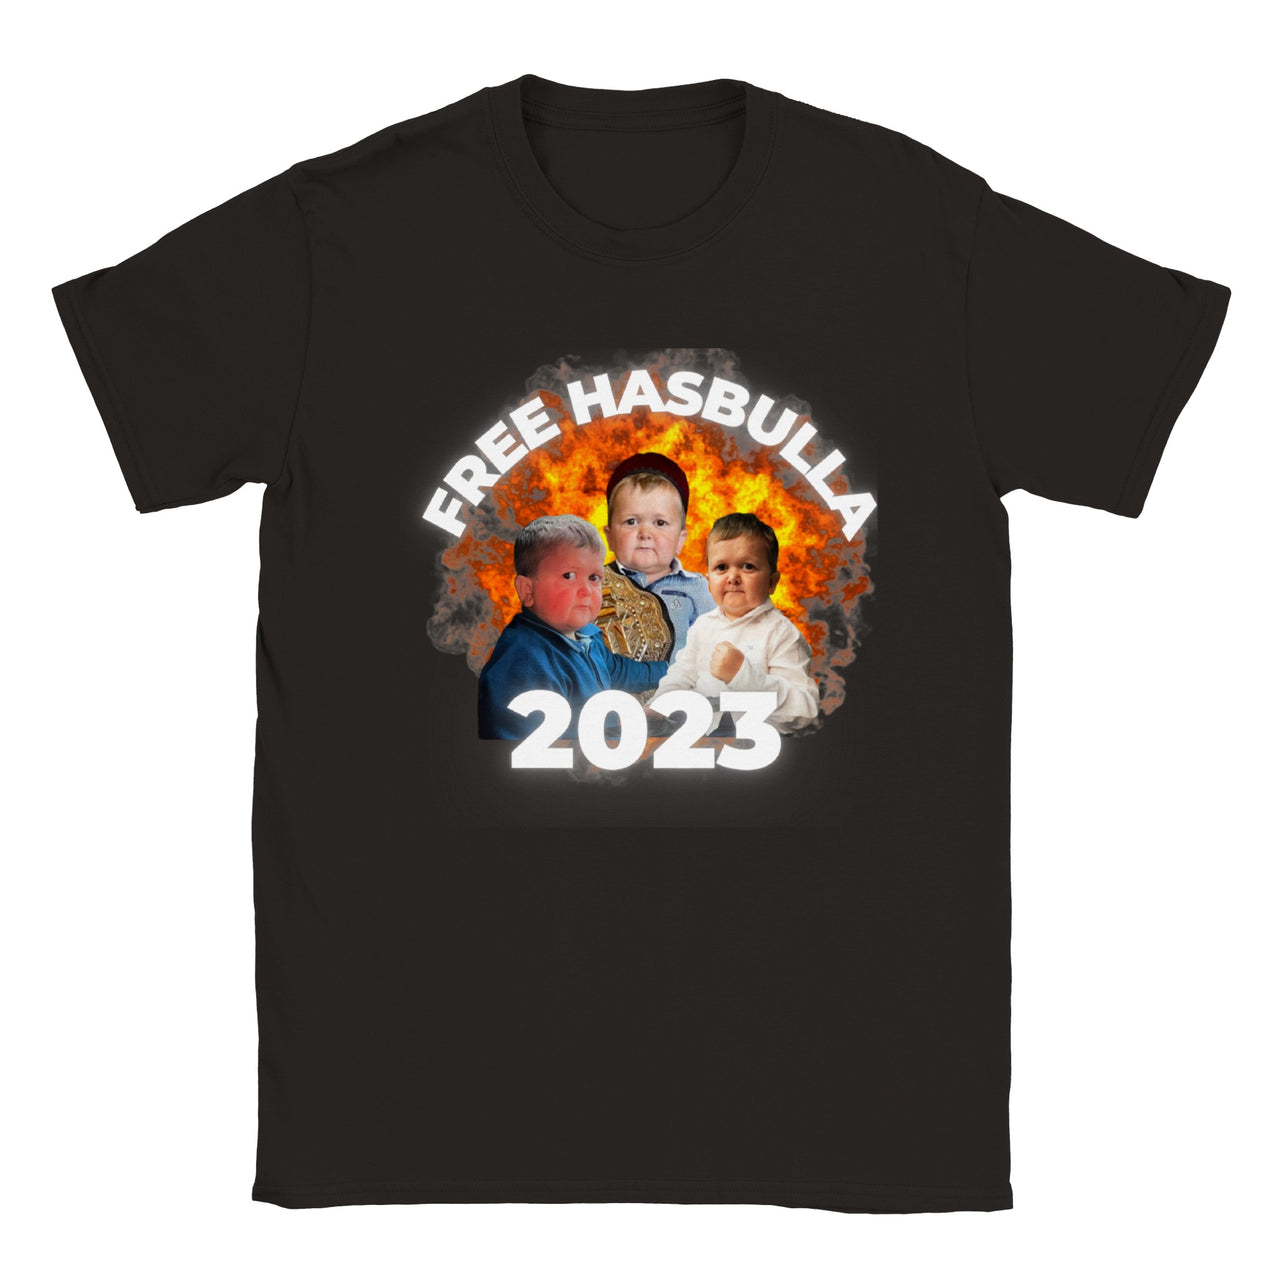 Free Hasbulla T-shirt